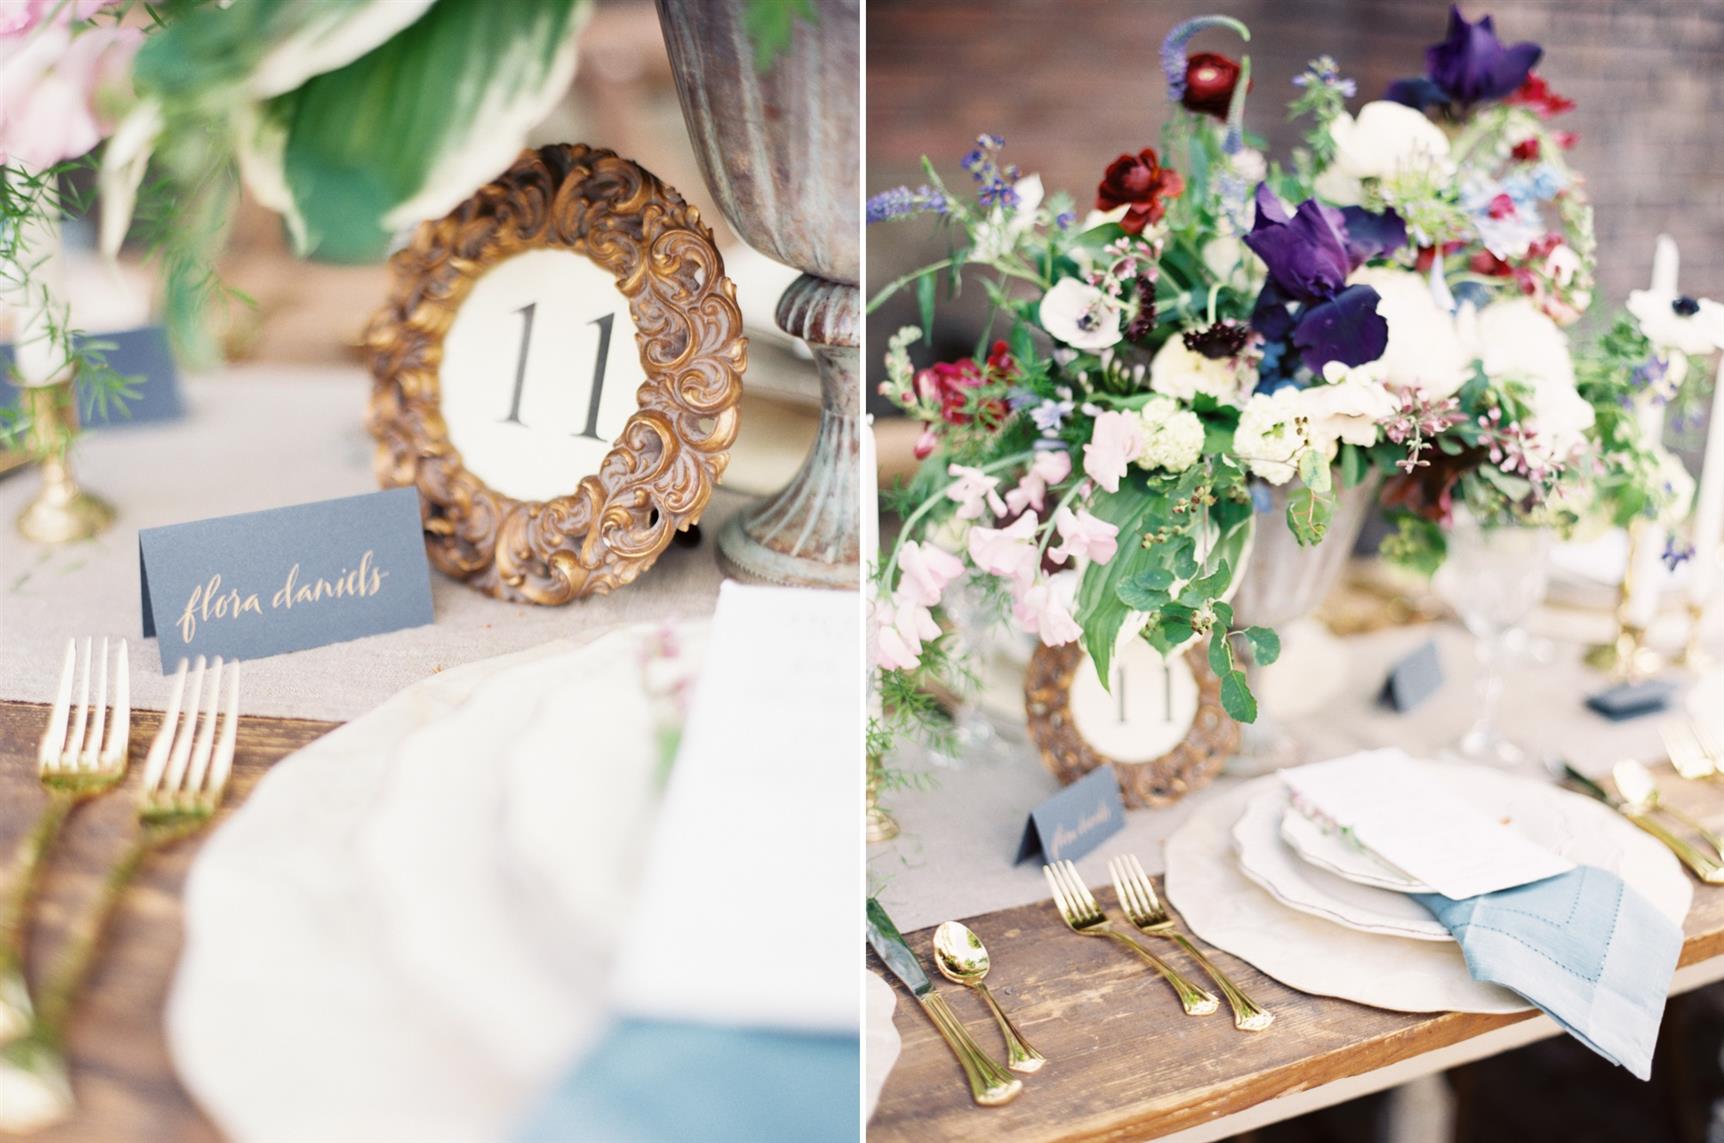 Wedding Tablescape - "The Secret Garden" A Romantic Garden Wedding Inspiration Shoot